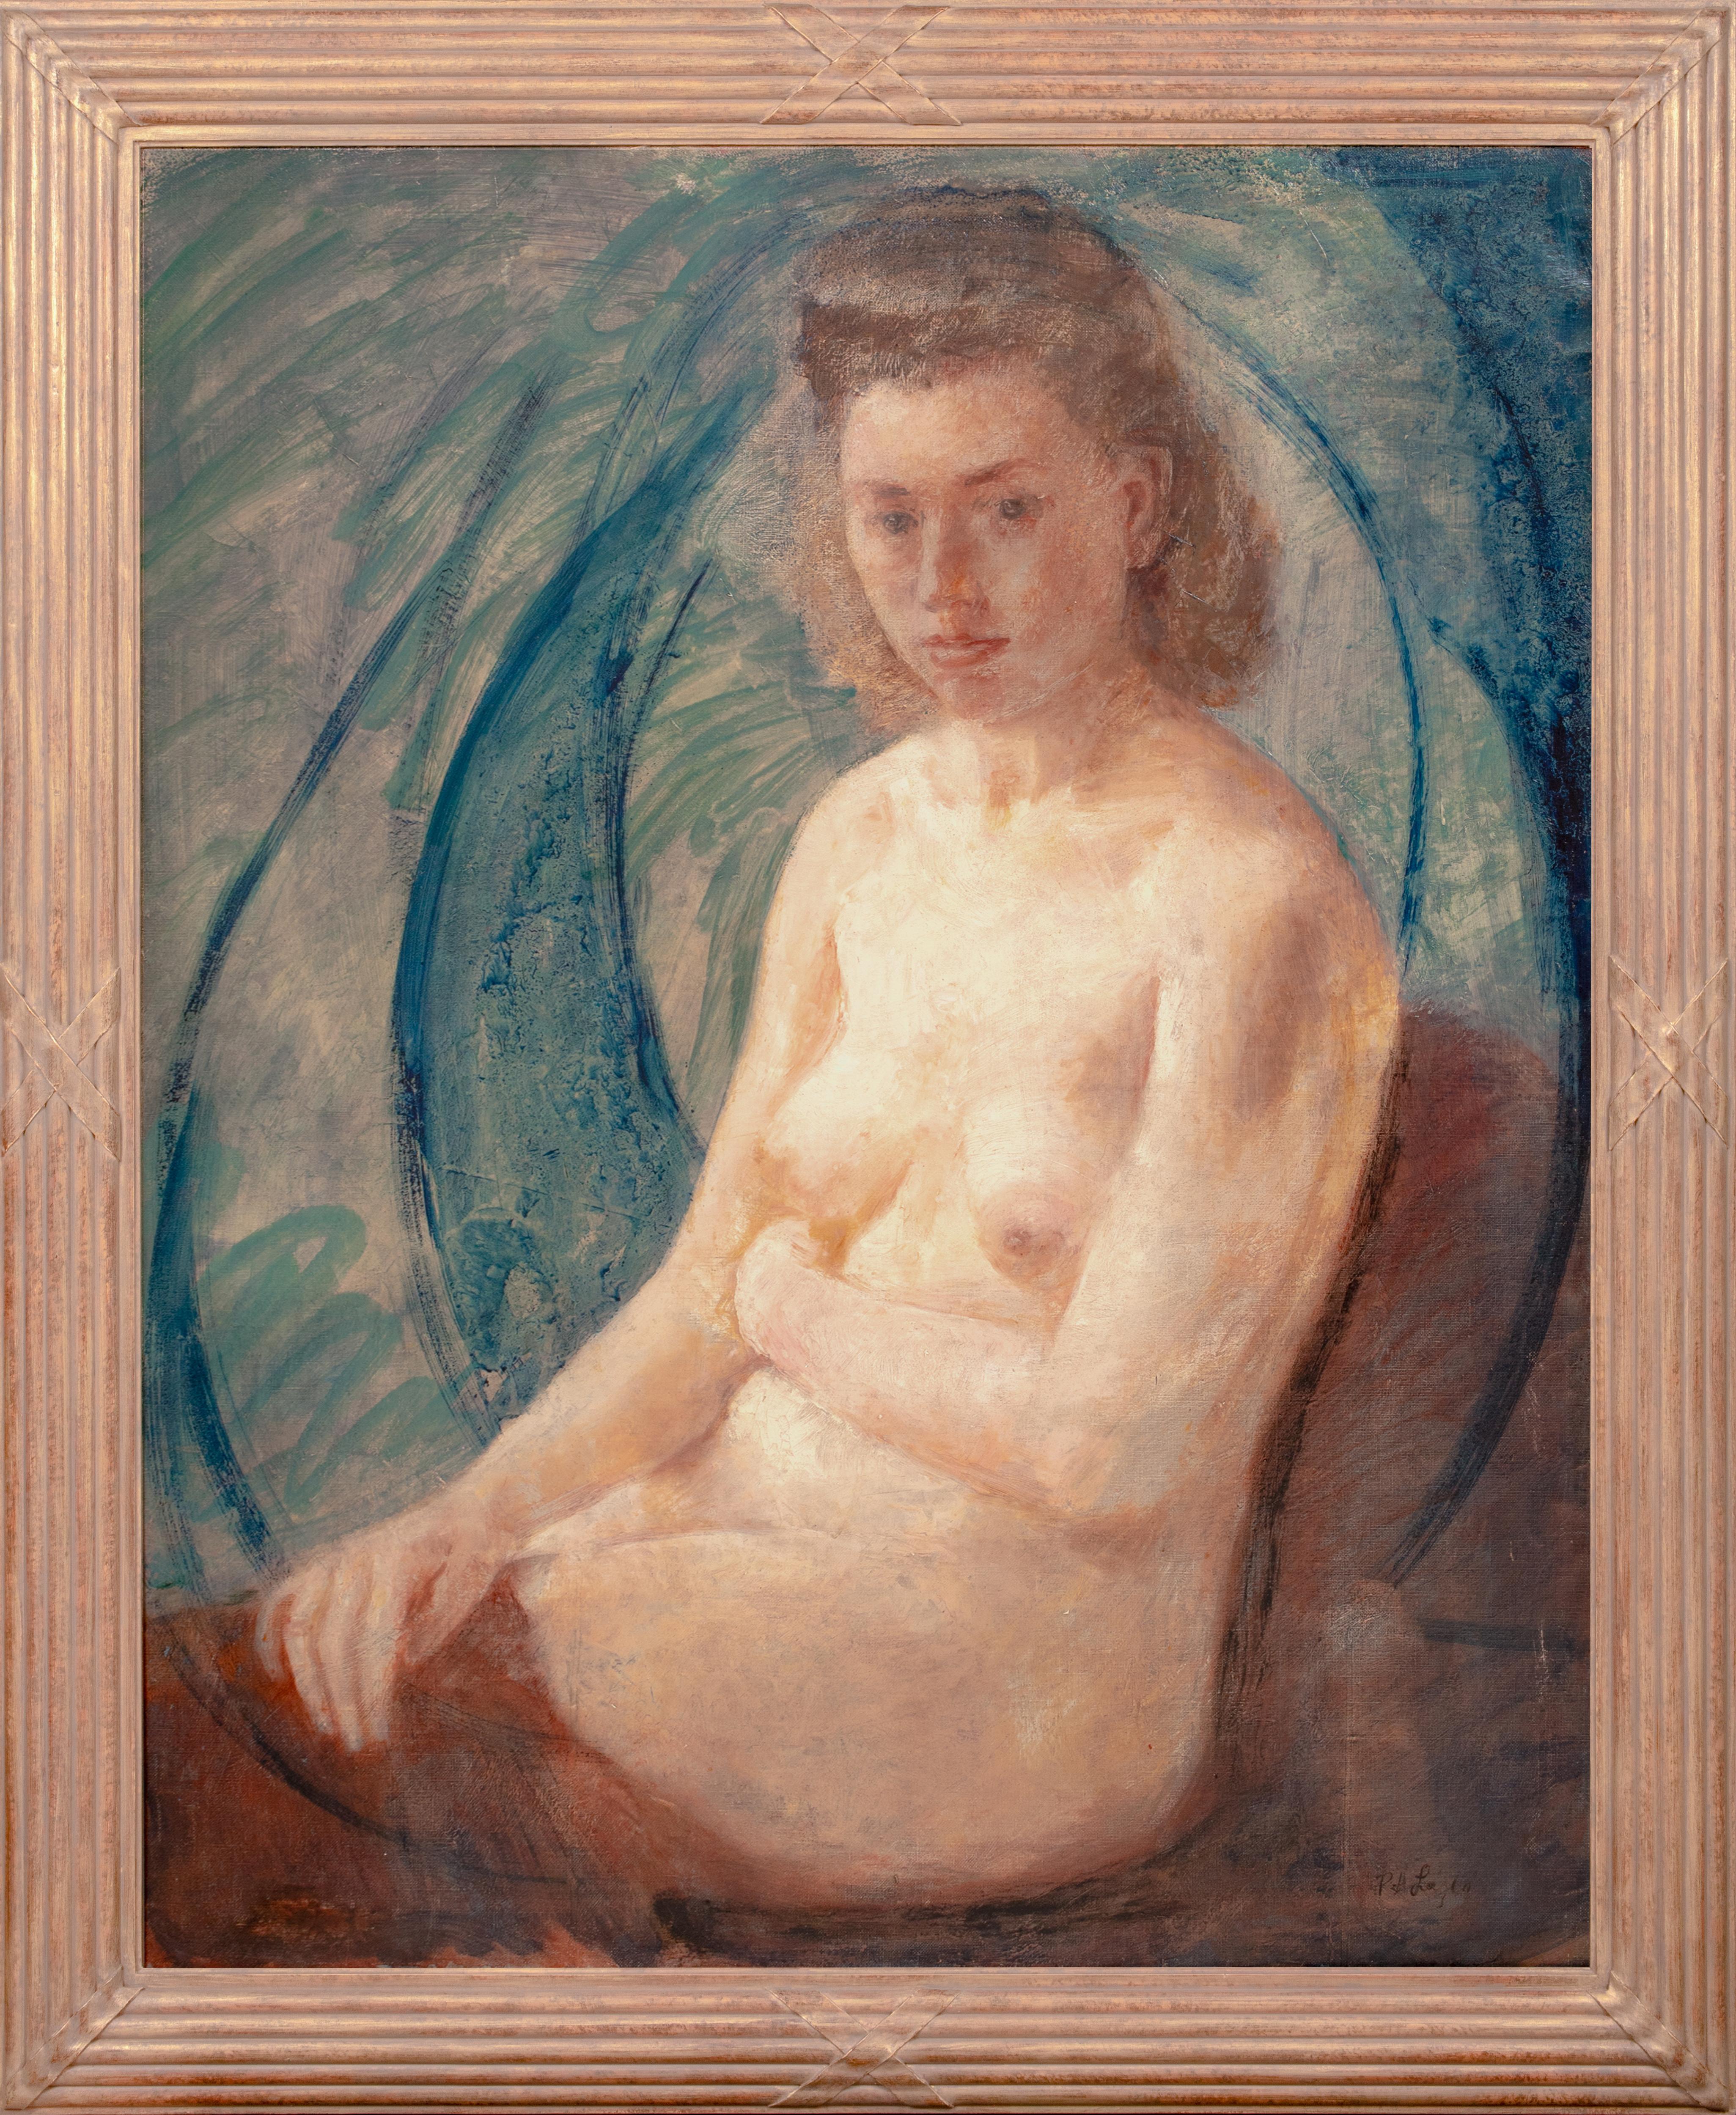 Portrait Painting Philip de Laszlo - Portrait d'une femme nue, vers 1900  par Philip de László (1869-1937) 